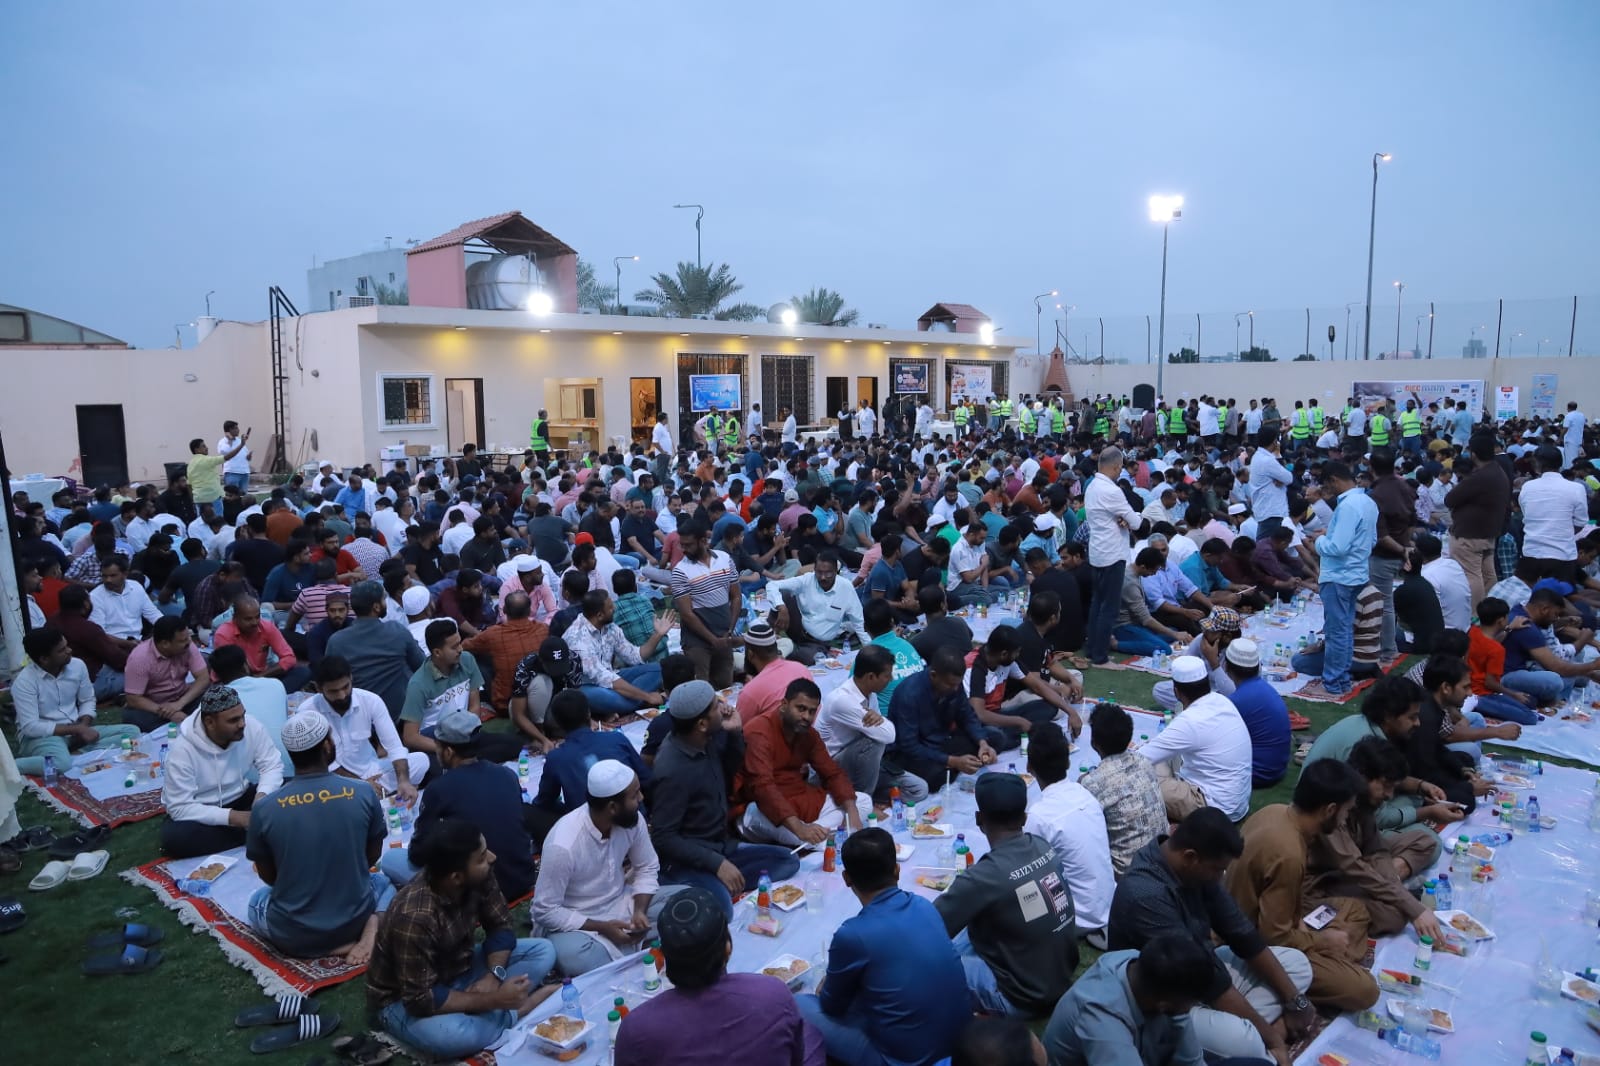 സ്നേഹവും സാഹോദര്യവും സൗഹൃദവും ഇഴചേര്‍ത്ത് ജനസാഗരമായി റിയാദ് ഒഐസിസി സൗഹൃദ ഇഫ്താർ സംഗമം #Crowded Riyadh OICC Friendly Iftar Gathering